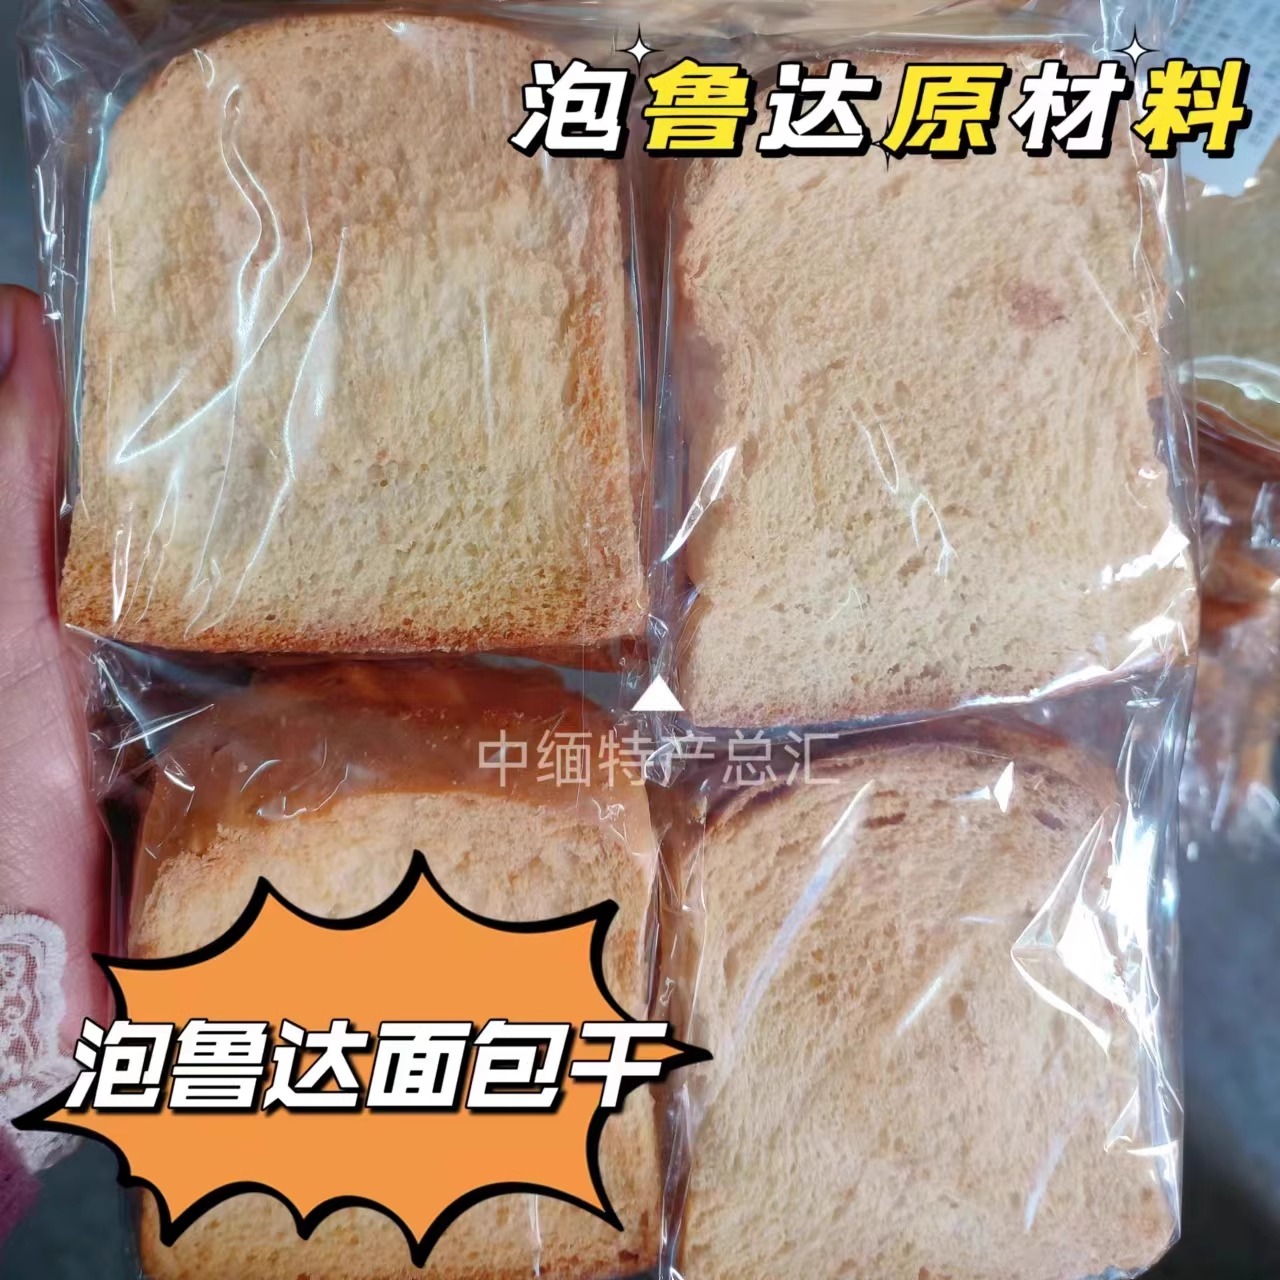 泡鲁达专用面包干现货代购6袋包邮香酥脆饼材料网红泡鲁达同款